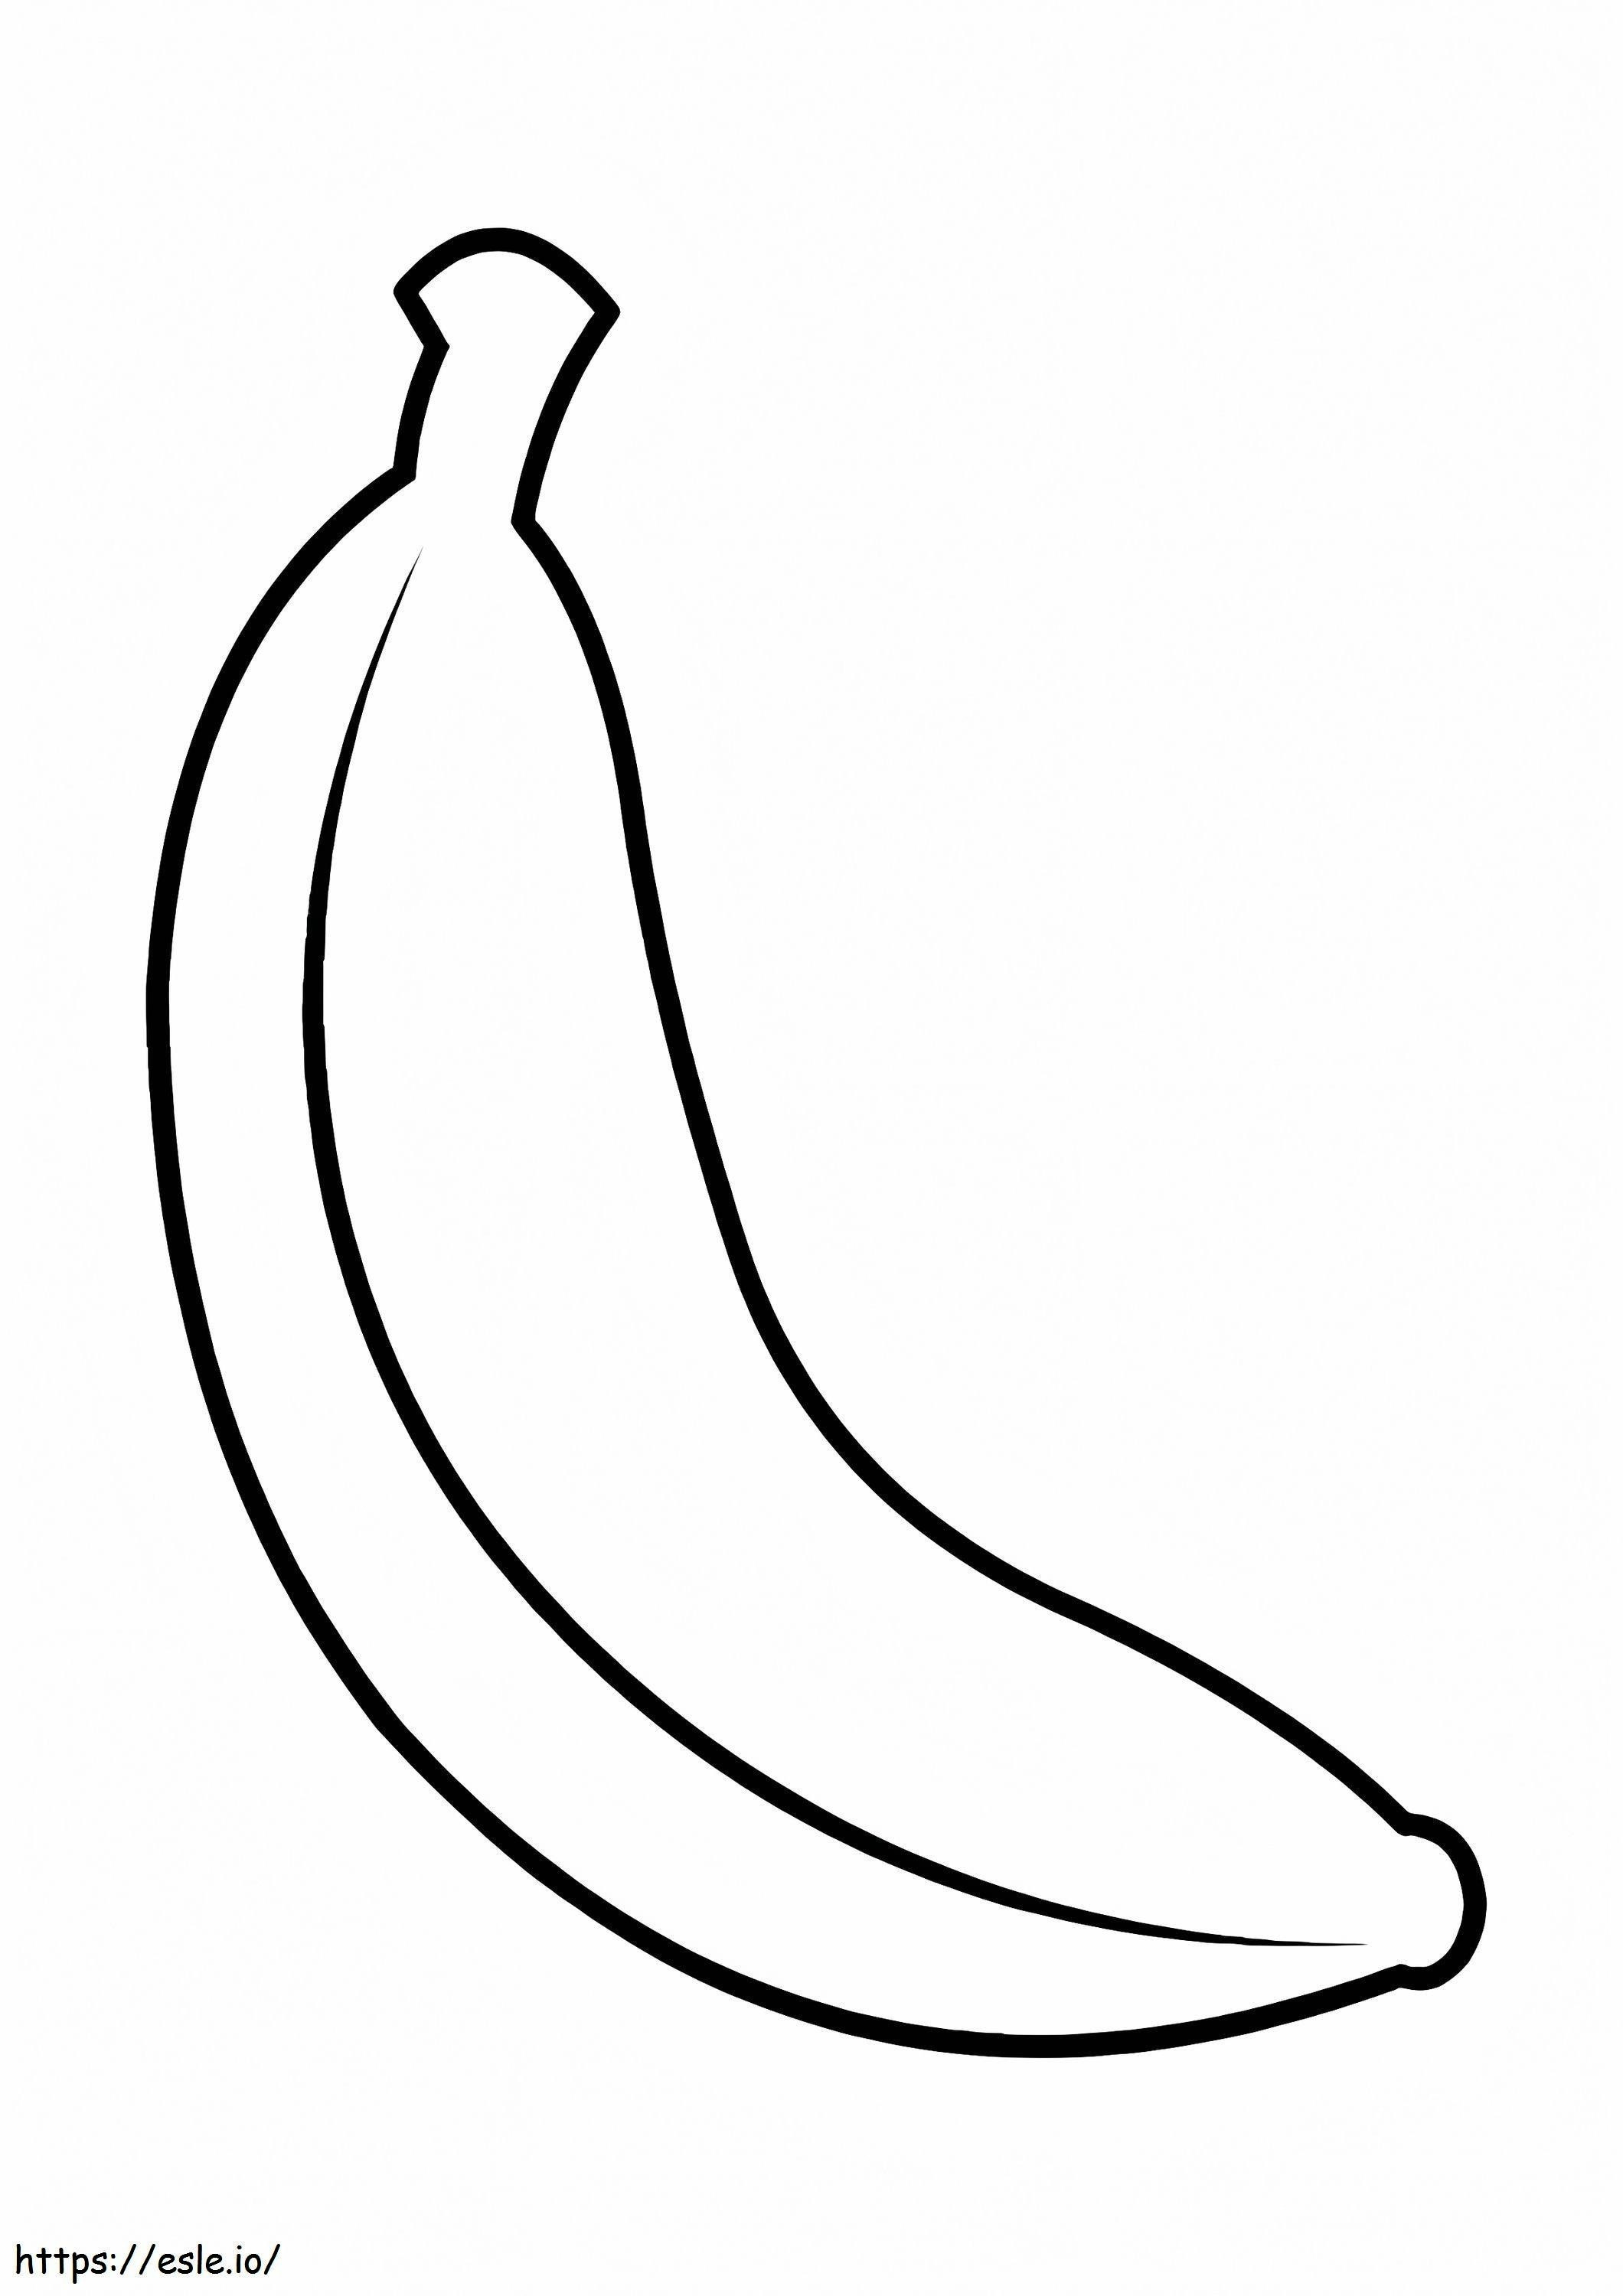 Big Banana coloring page